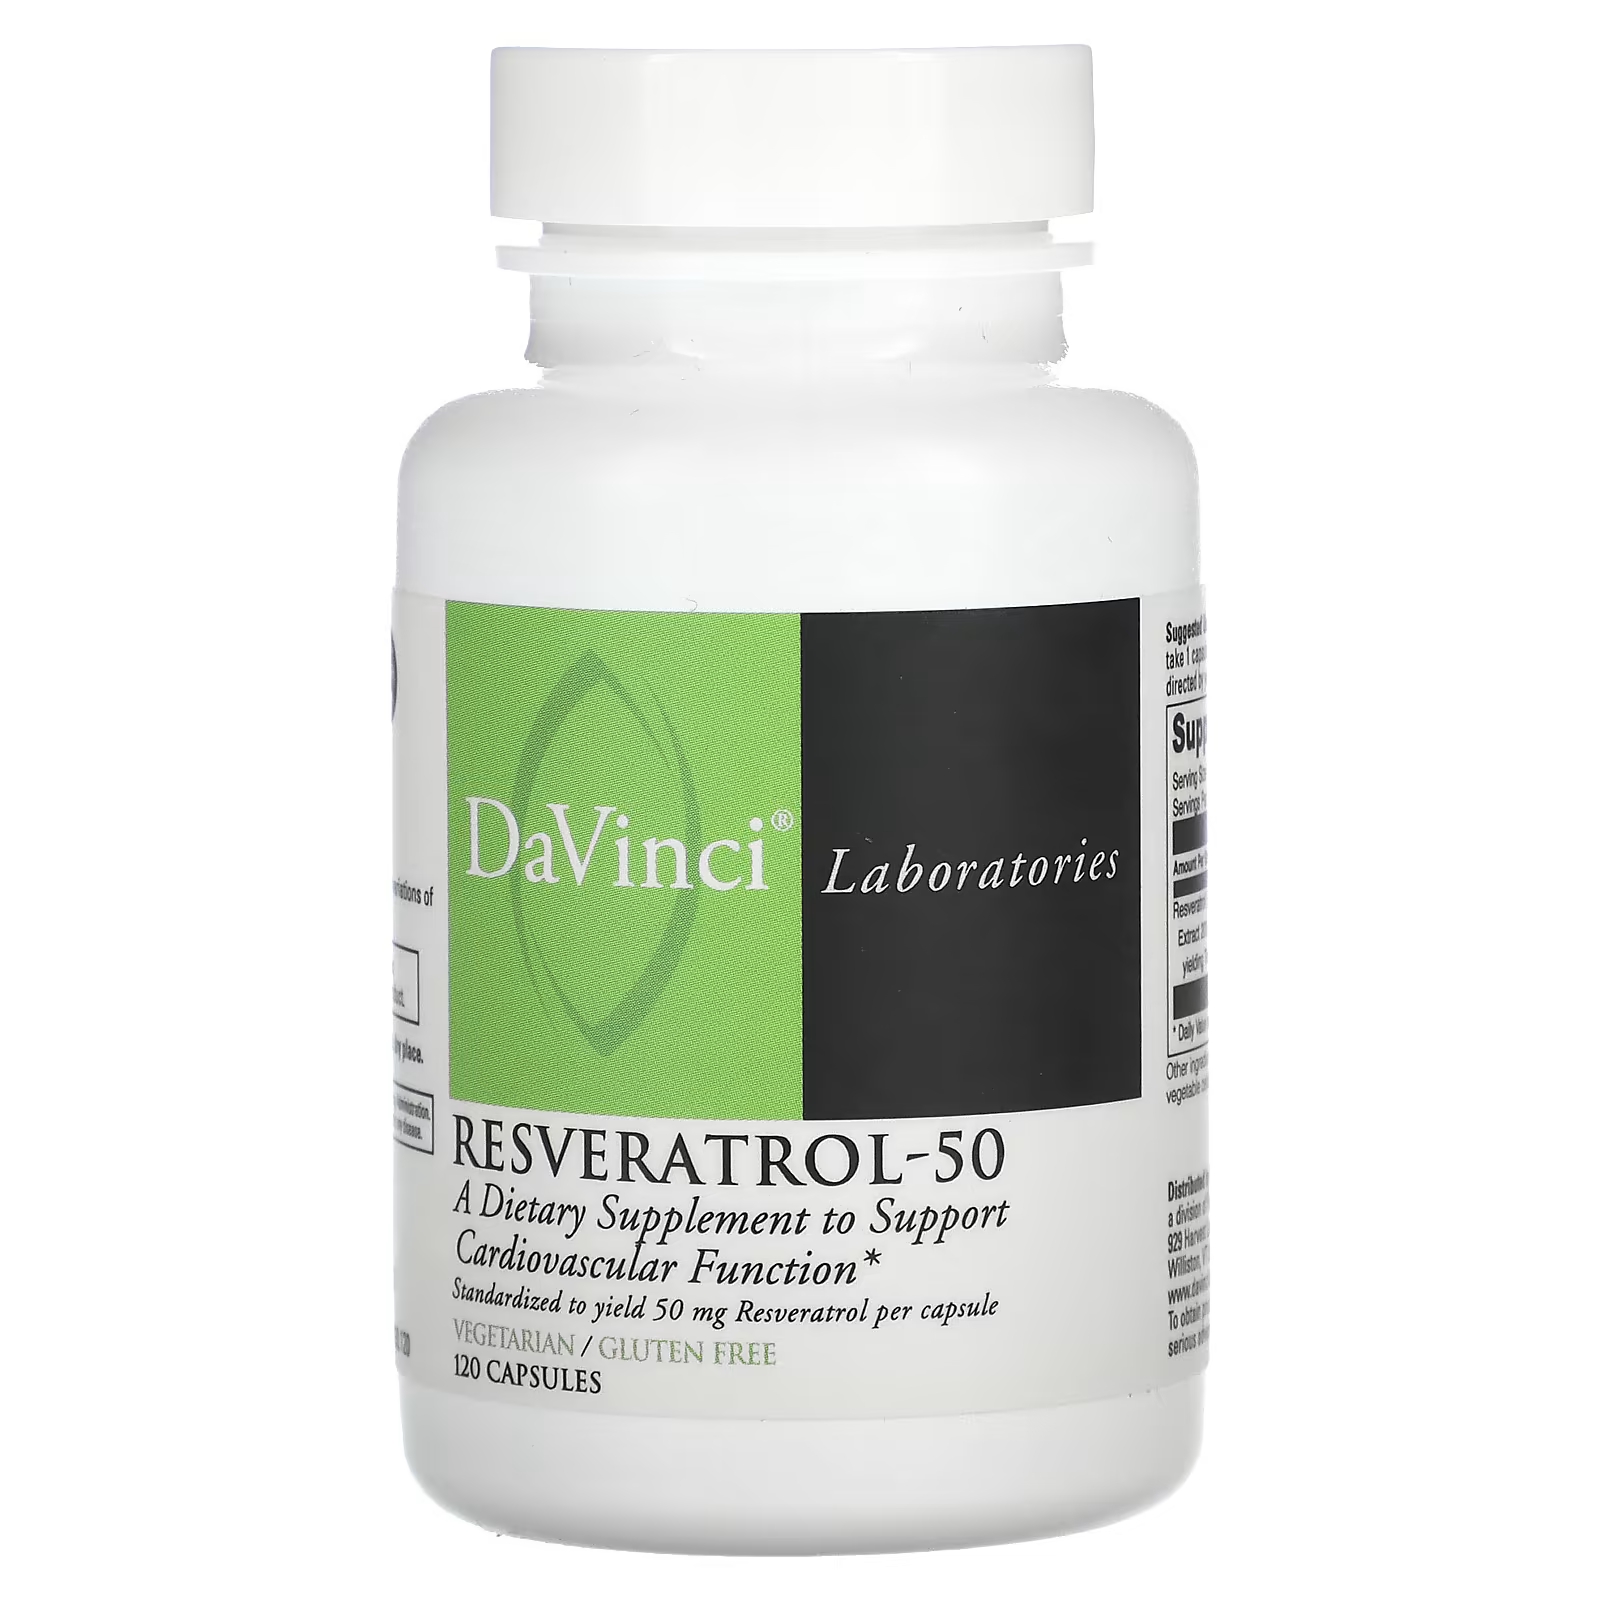 Пищевая добавка DaVinci Laboratories of Vermont для поддержки сердечно-сосудистой системы, 50 мг